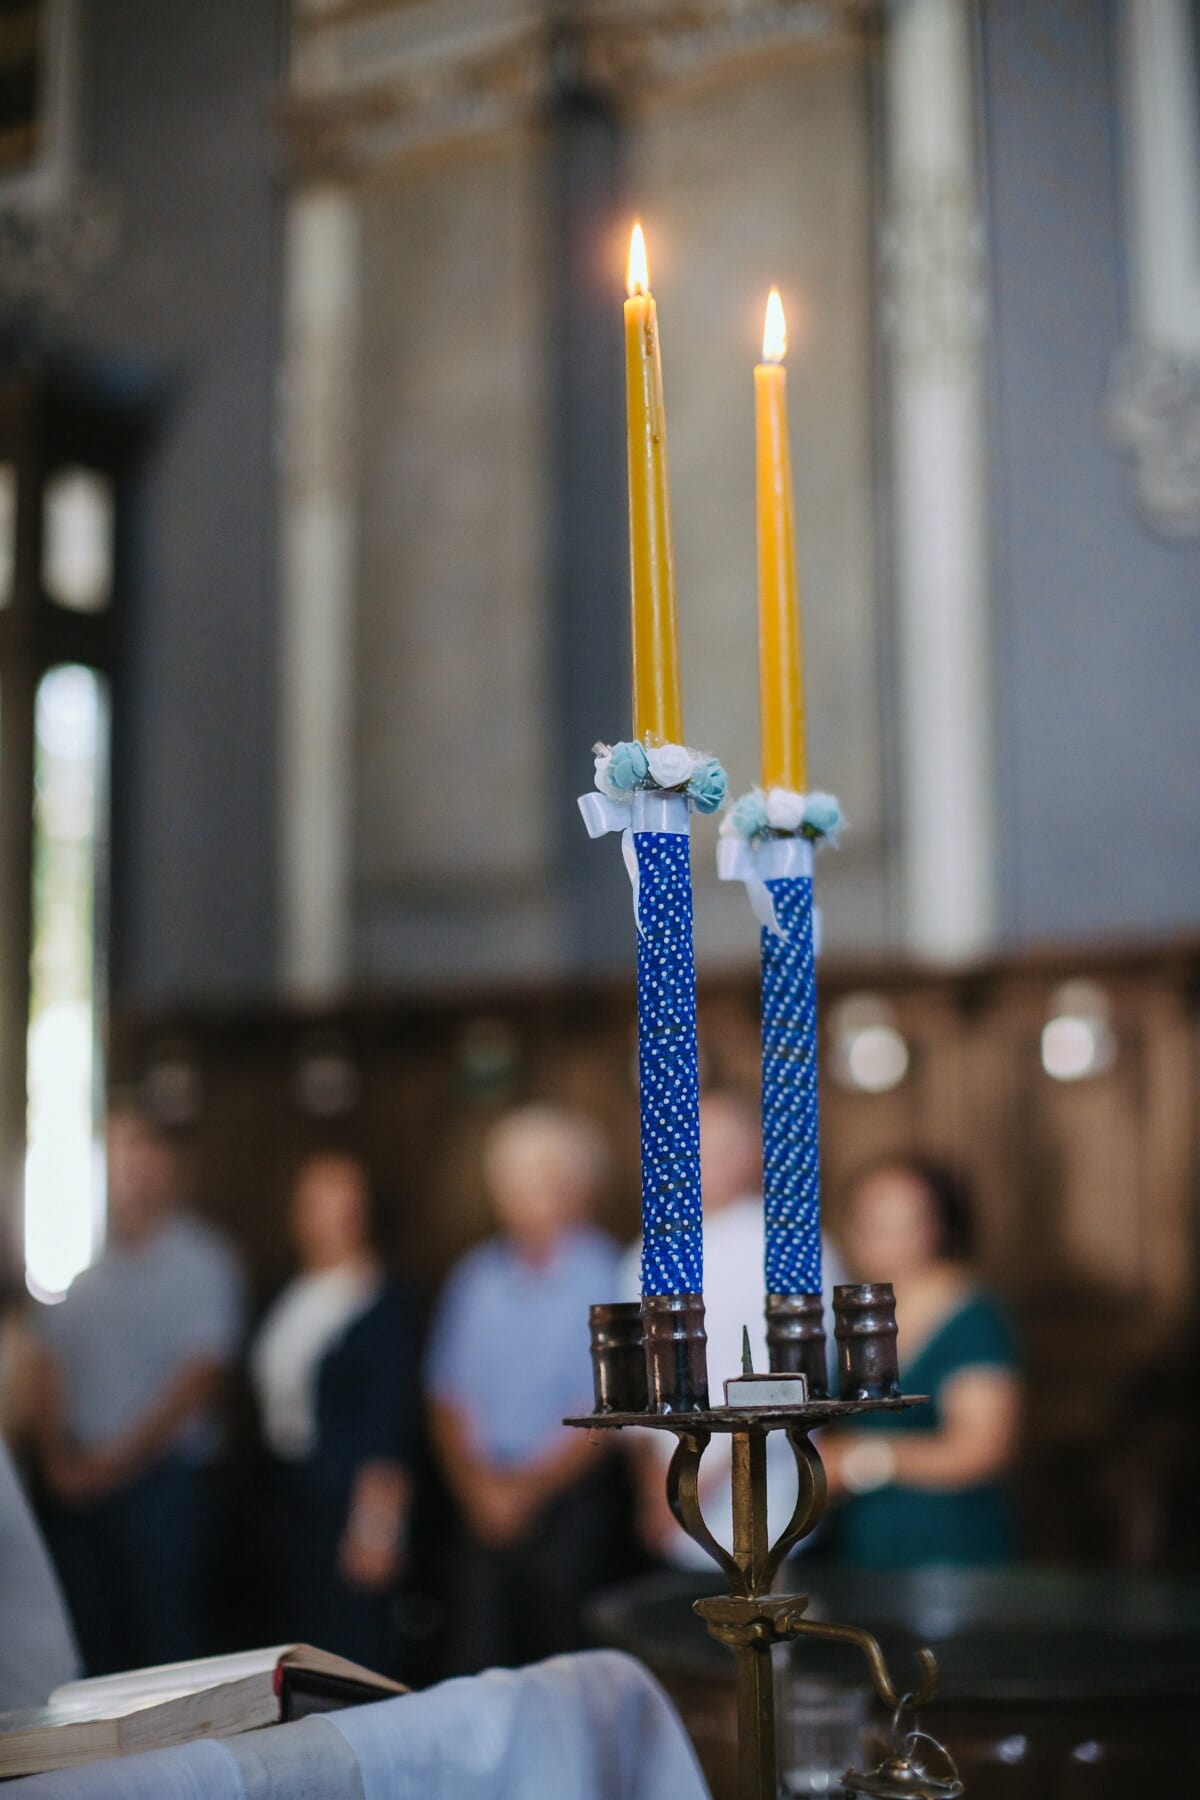 Kerzen, Kirche, Licht, Kerze, Religion, Zeremonie, Menschen, Flamme, geistigkeit, Candle-Light